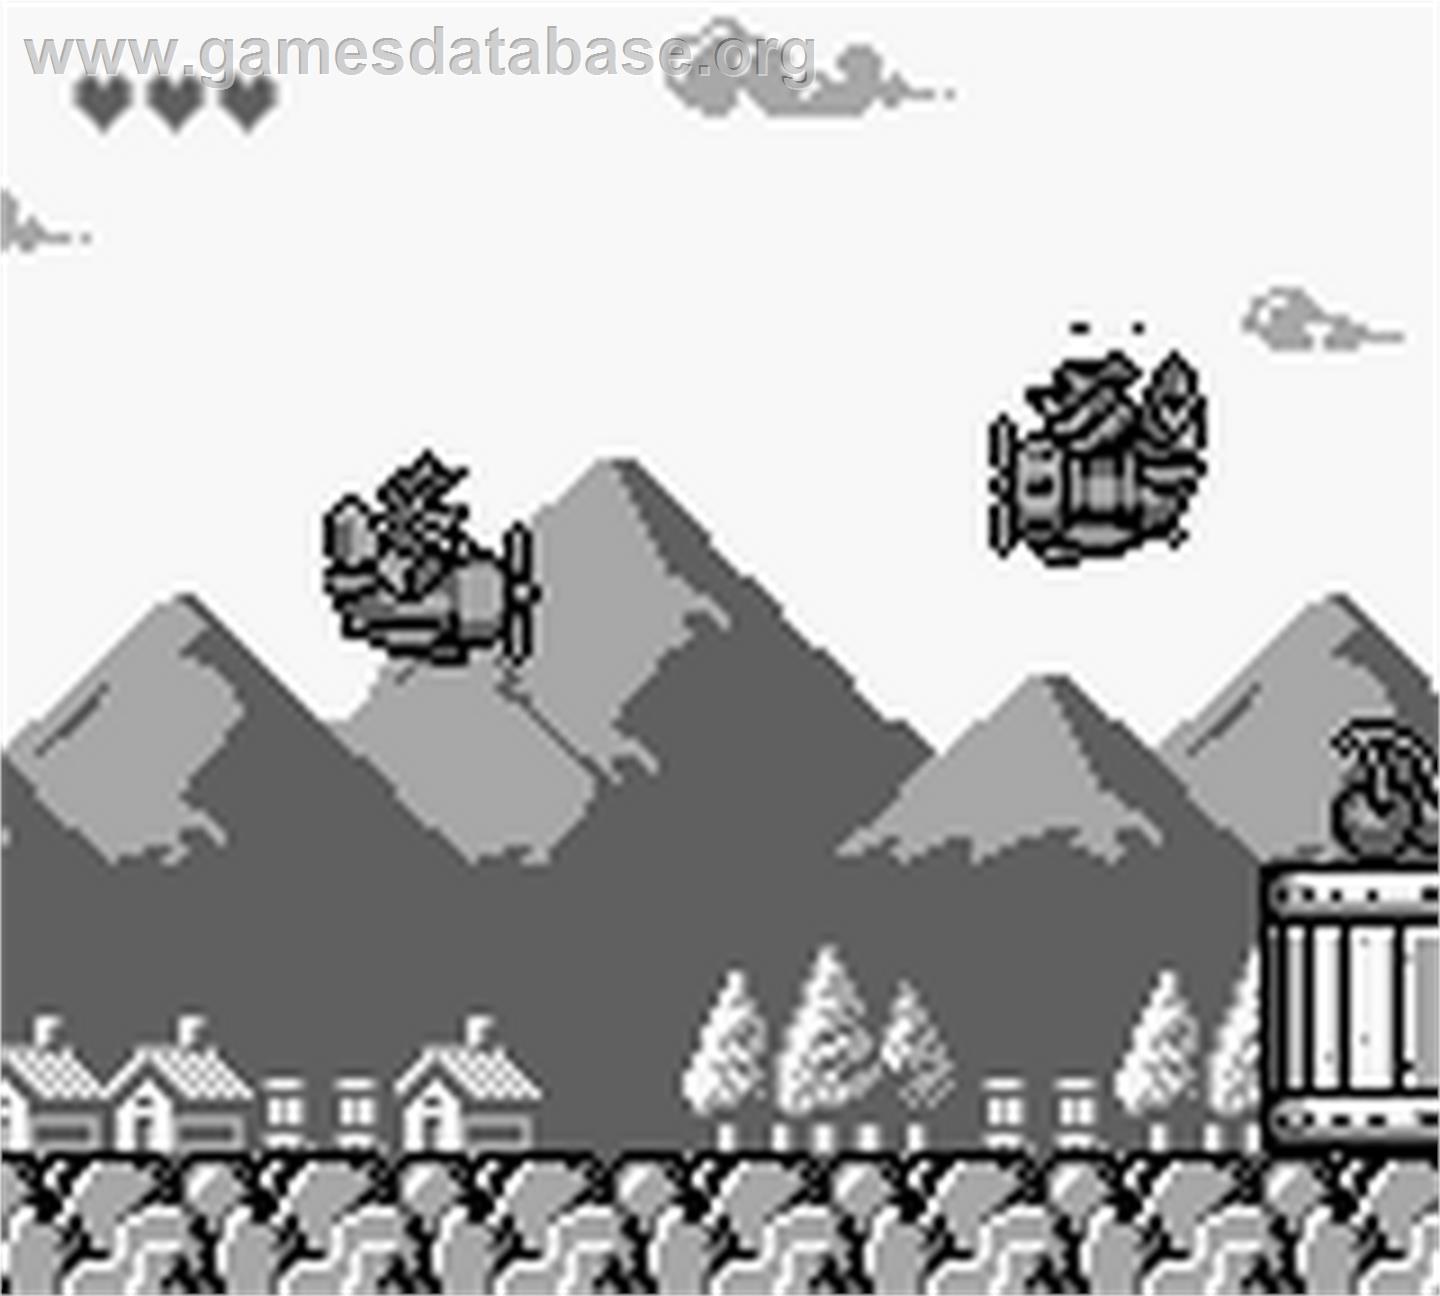 TaleSpin - Nintendo Game Boy - Artwork - In Game